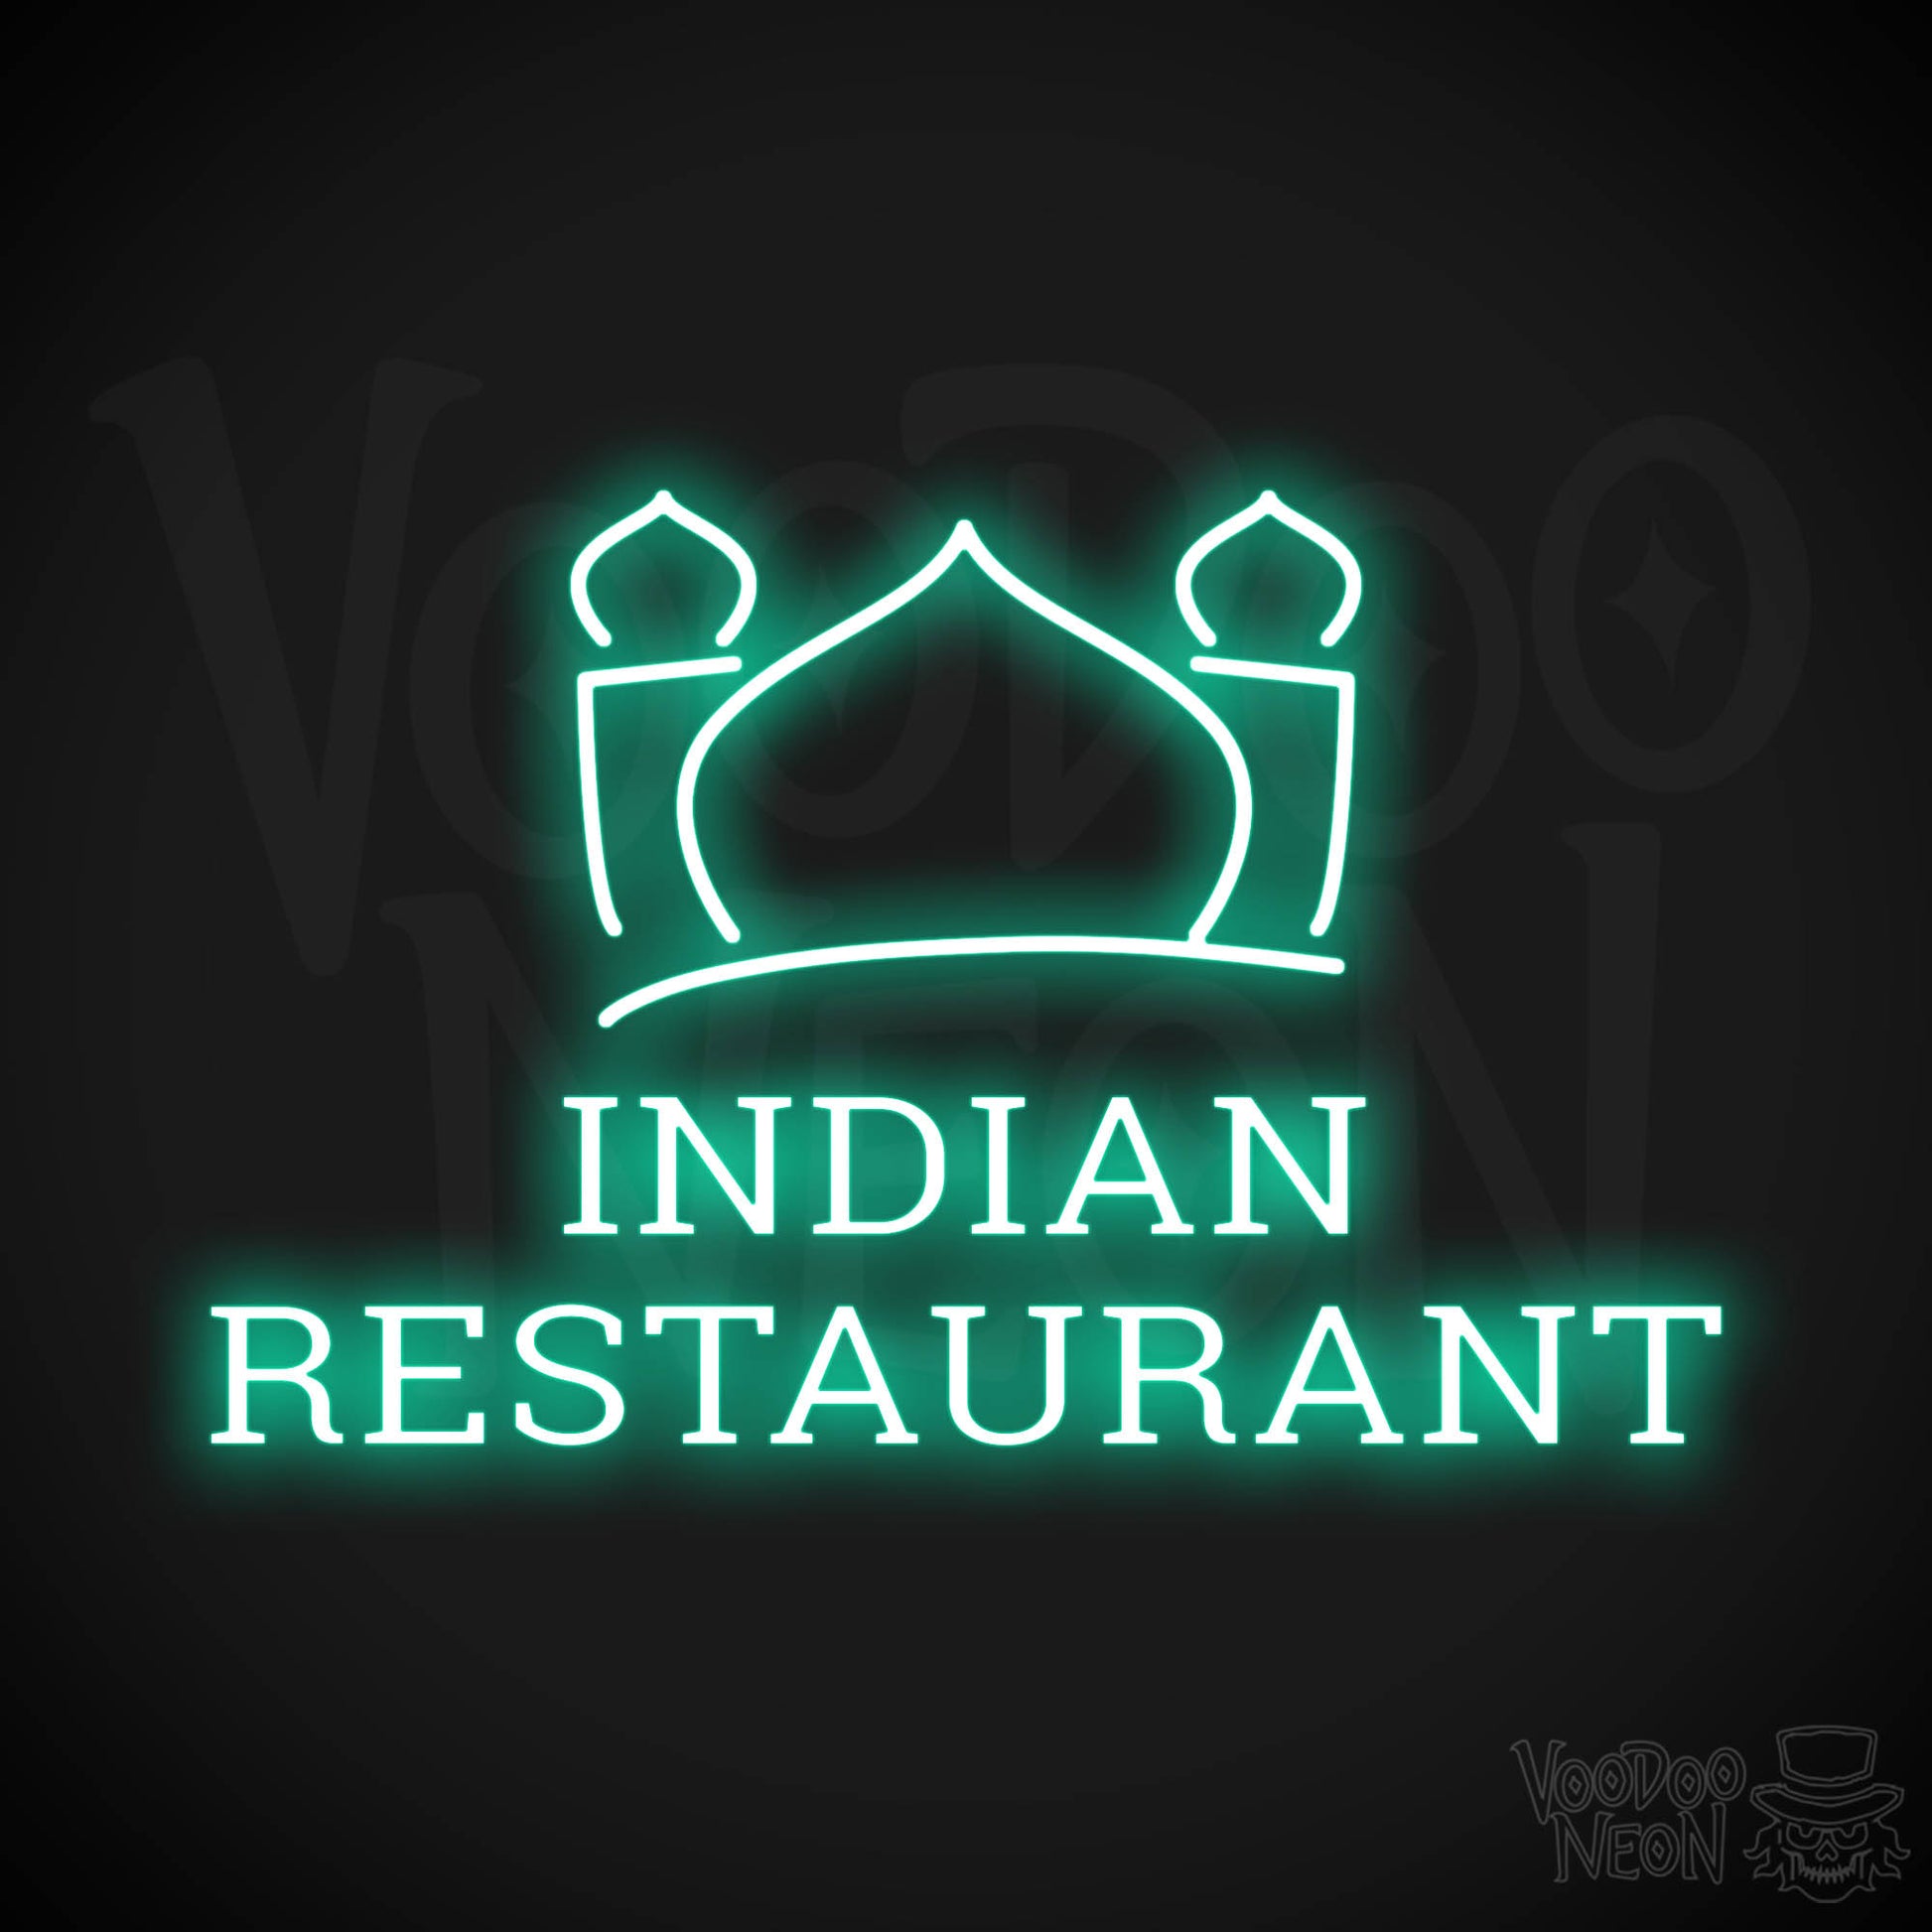 Indian Restaurant LED Neon - Light Green